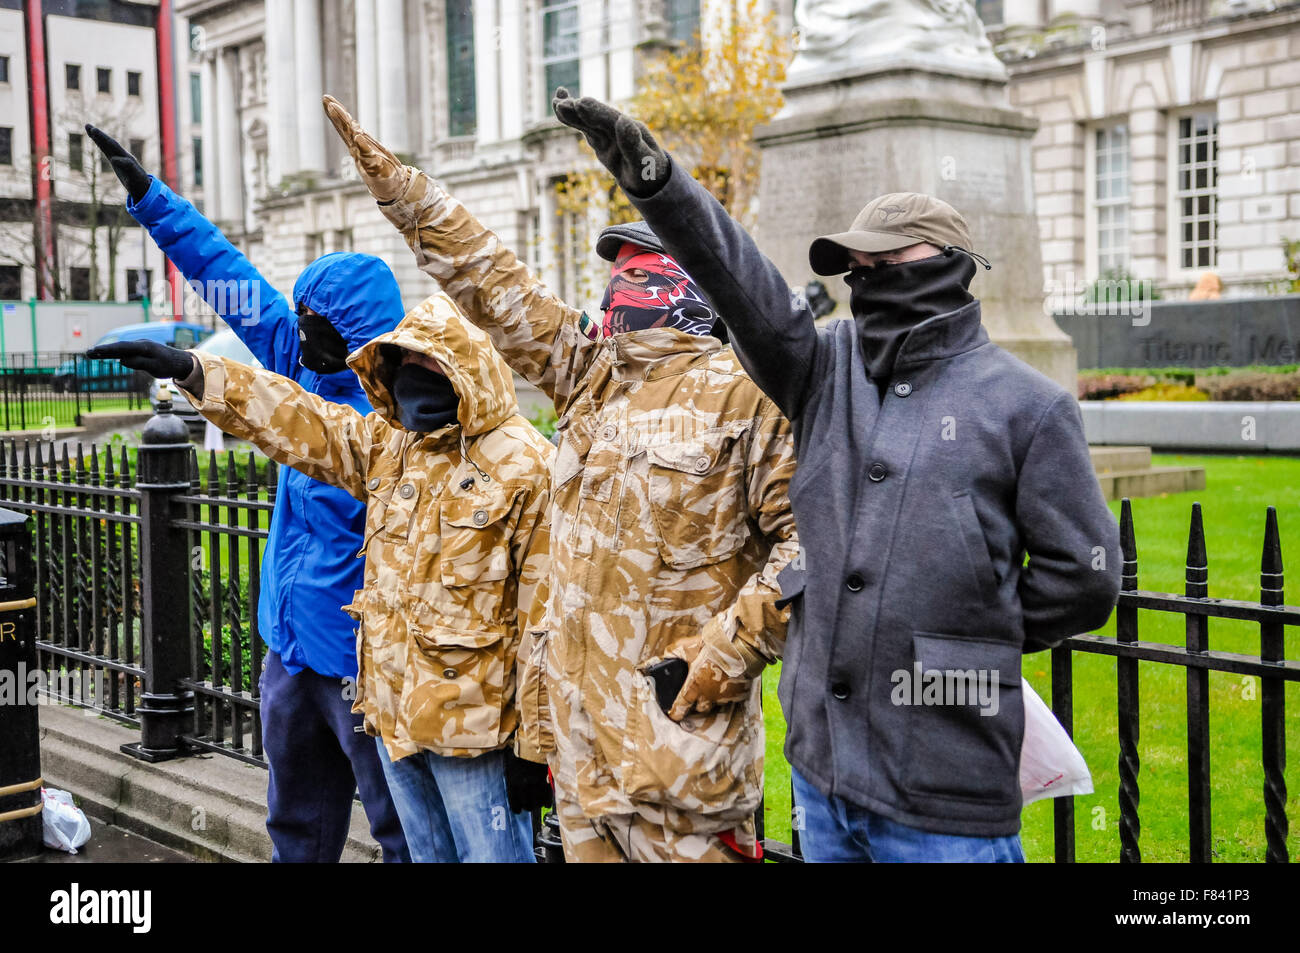 Belfast, Nordirland. 05. Dez 2015 - Eine kleine Gruppe von Neonazis mit Protest der Name 'Waffen-SS West Belfast Shankill Skinheads in der City Hall von Belfast gegen muslimische Flüchtlinge aus Syrien und anderswo. In einer Aussage, Sie sagten 'Wir sind Skinheads bis zu dem Tag, an dem wir sterben, und wird immer kämpfen für unsere Britishness. W.P.W.W. [White Pride World Wide]'. Ein Vertreter behaupteten Flüchtlinge nicht in Belfast willkommen sind. "Es gibt genügend Probleme im eigenen Land in den letzten Jahren. Wir wollen nicht, dass sie [die Flüchtlinge]. Dies ist nicht nur von mir, es ist von allen, die ich kenne. Credit: Stephen Barnes/Alamy Live Neue Stockfoto